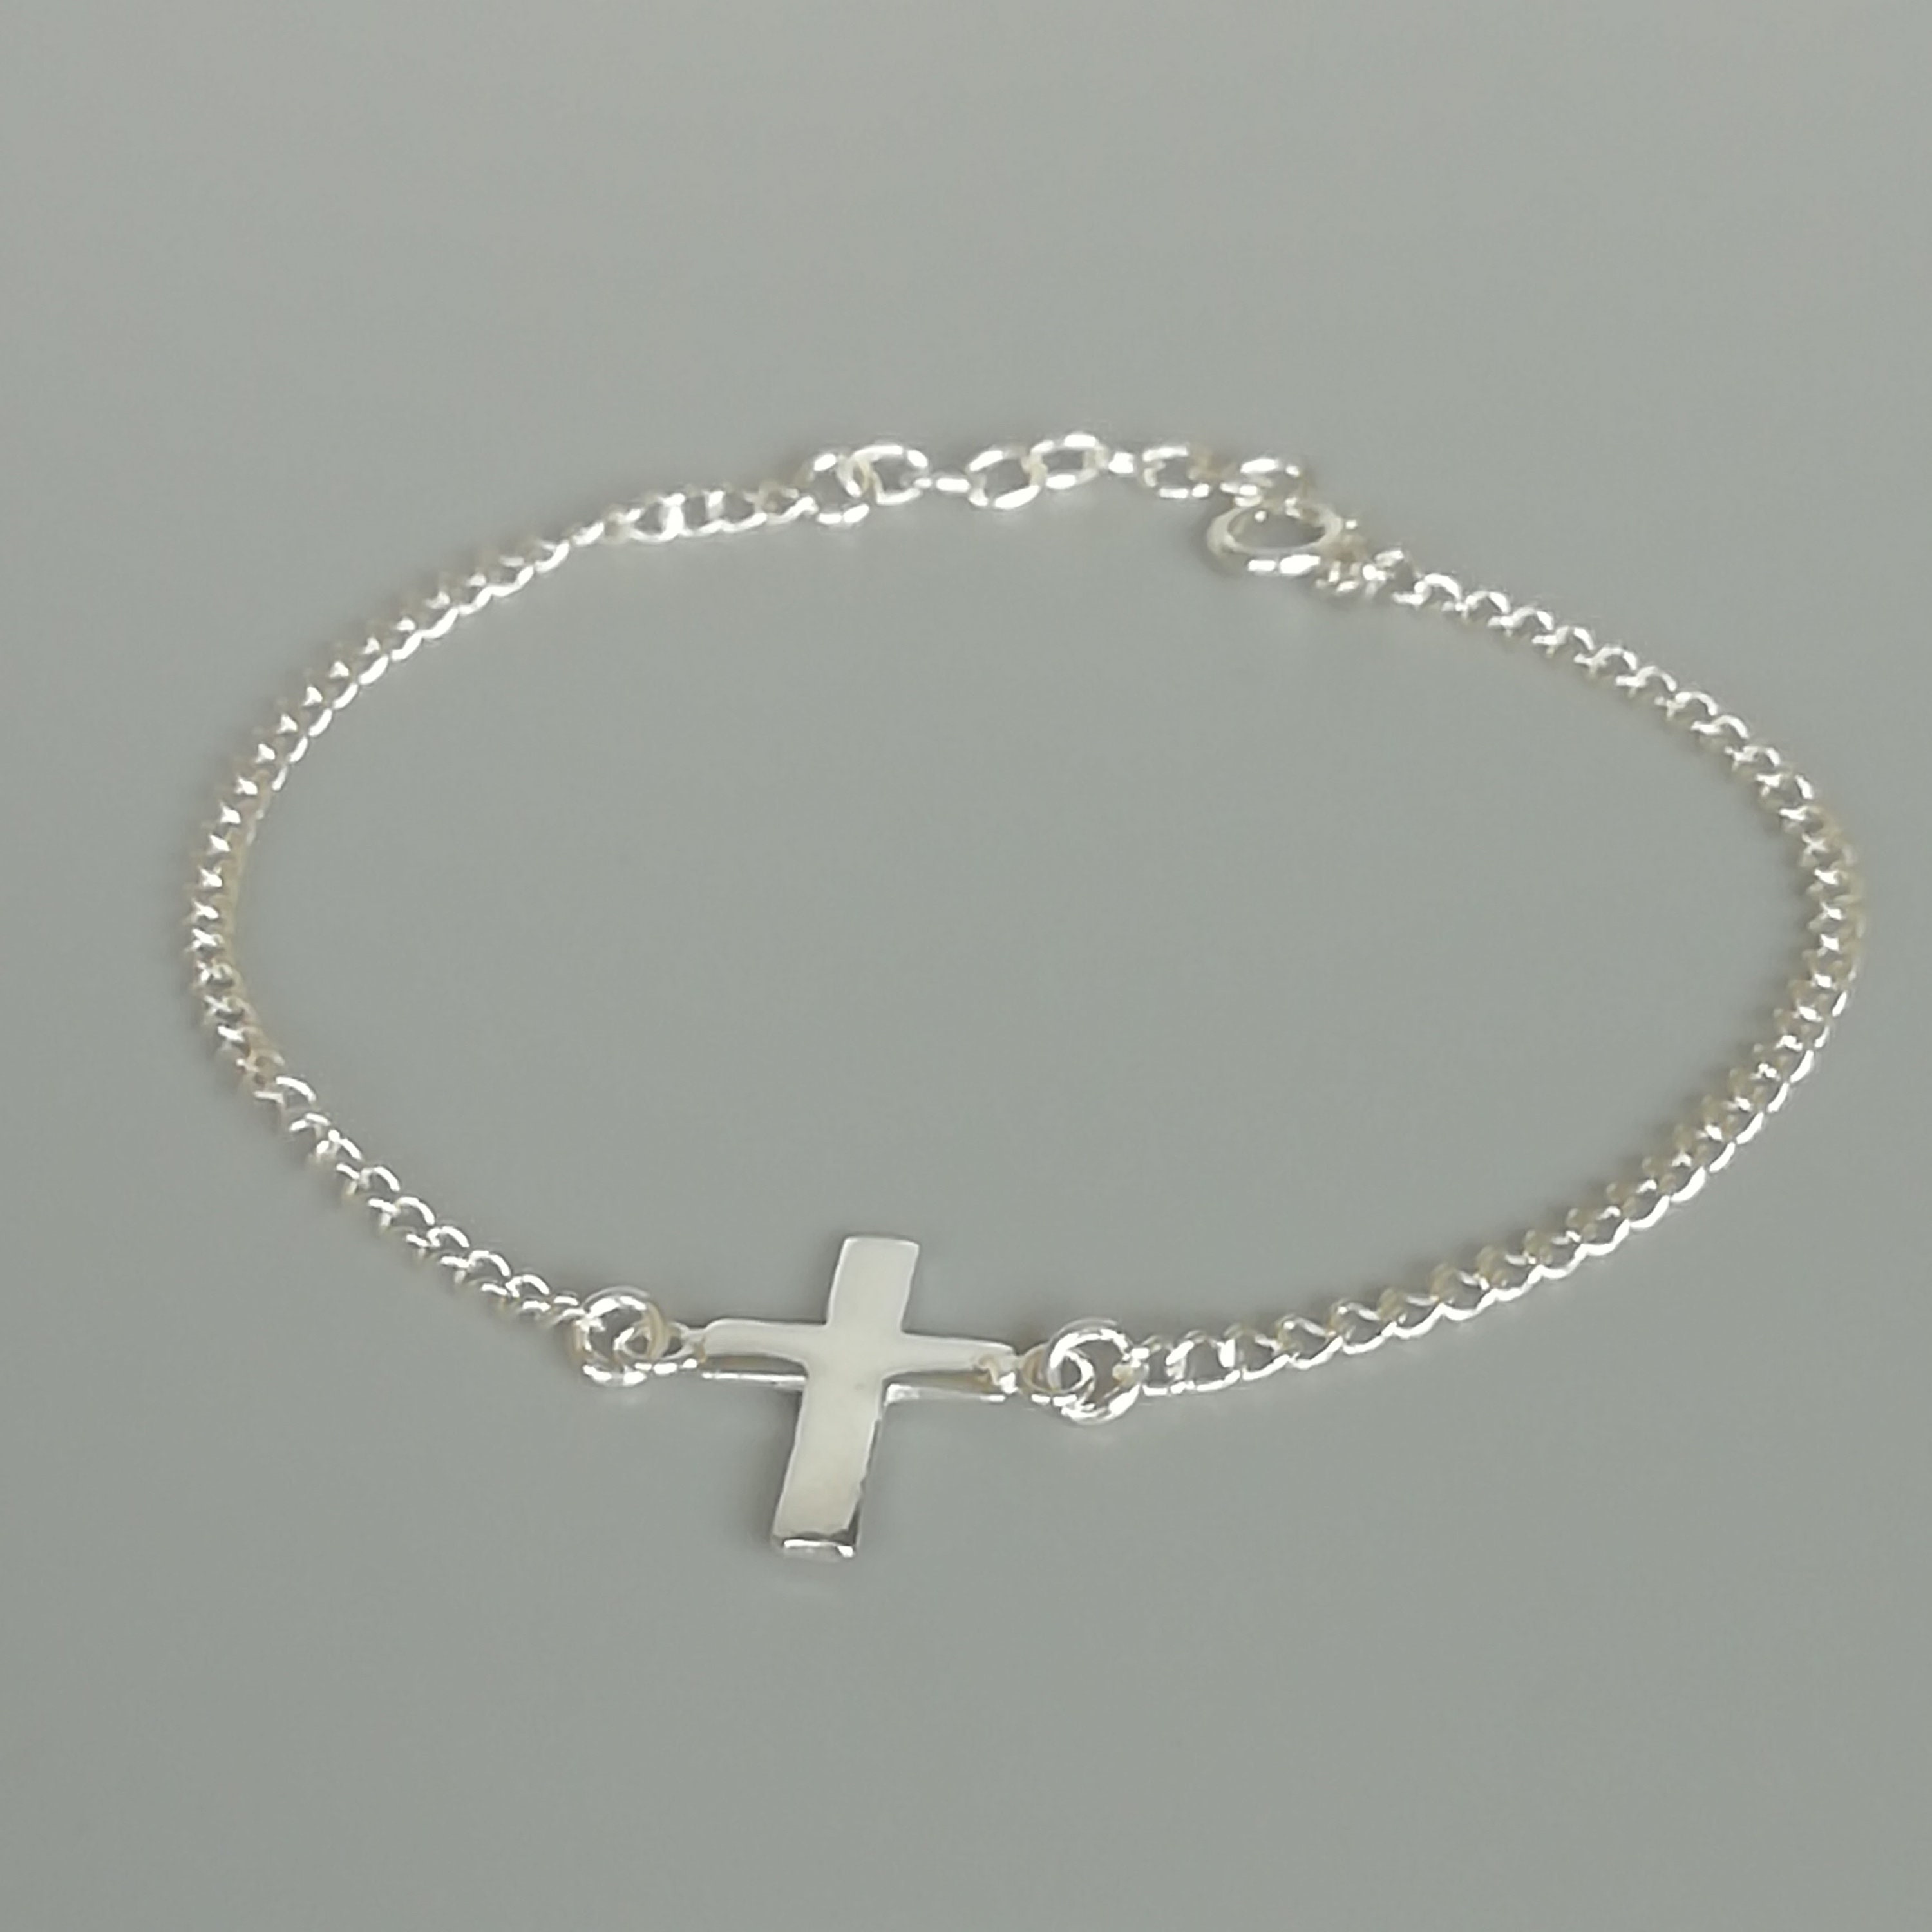 Cross bracelet Sterling silver charm bracelet Religious | Etsy